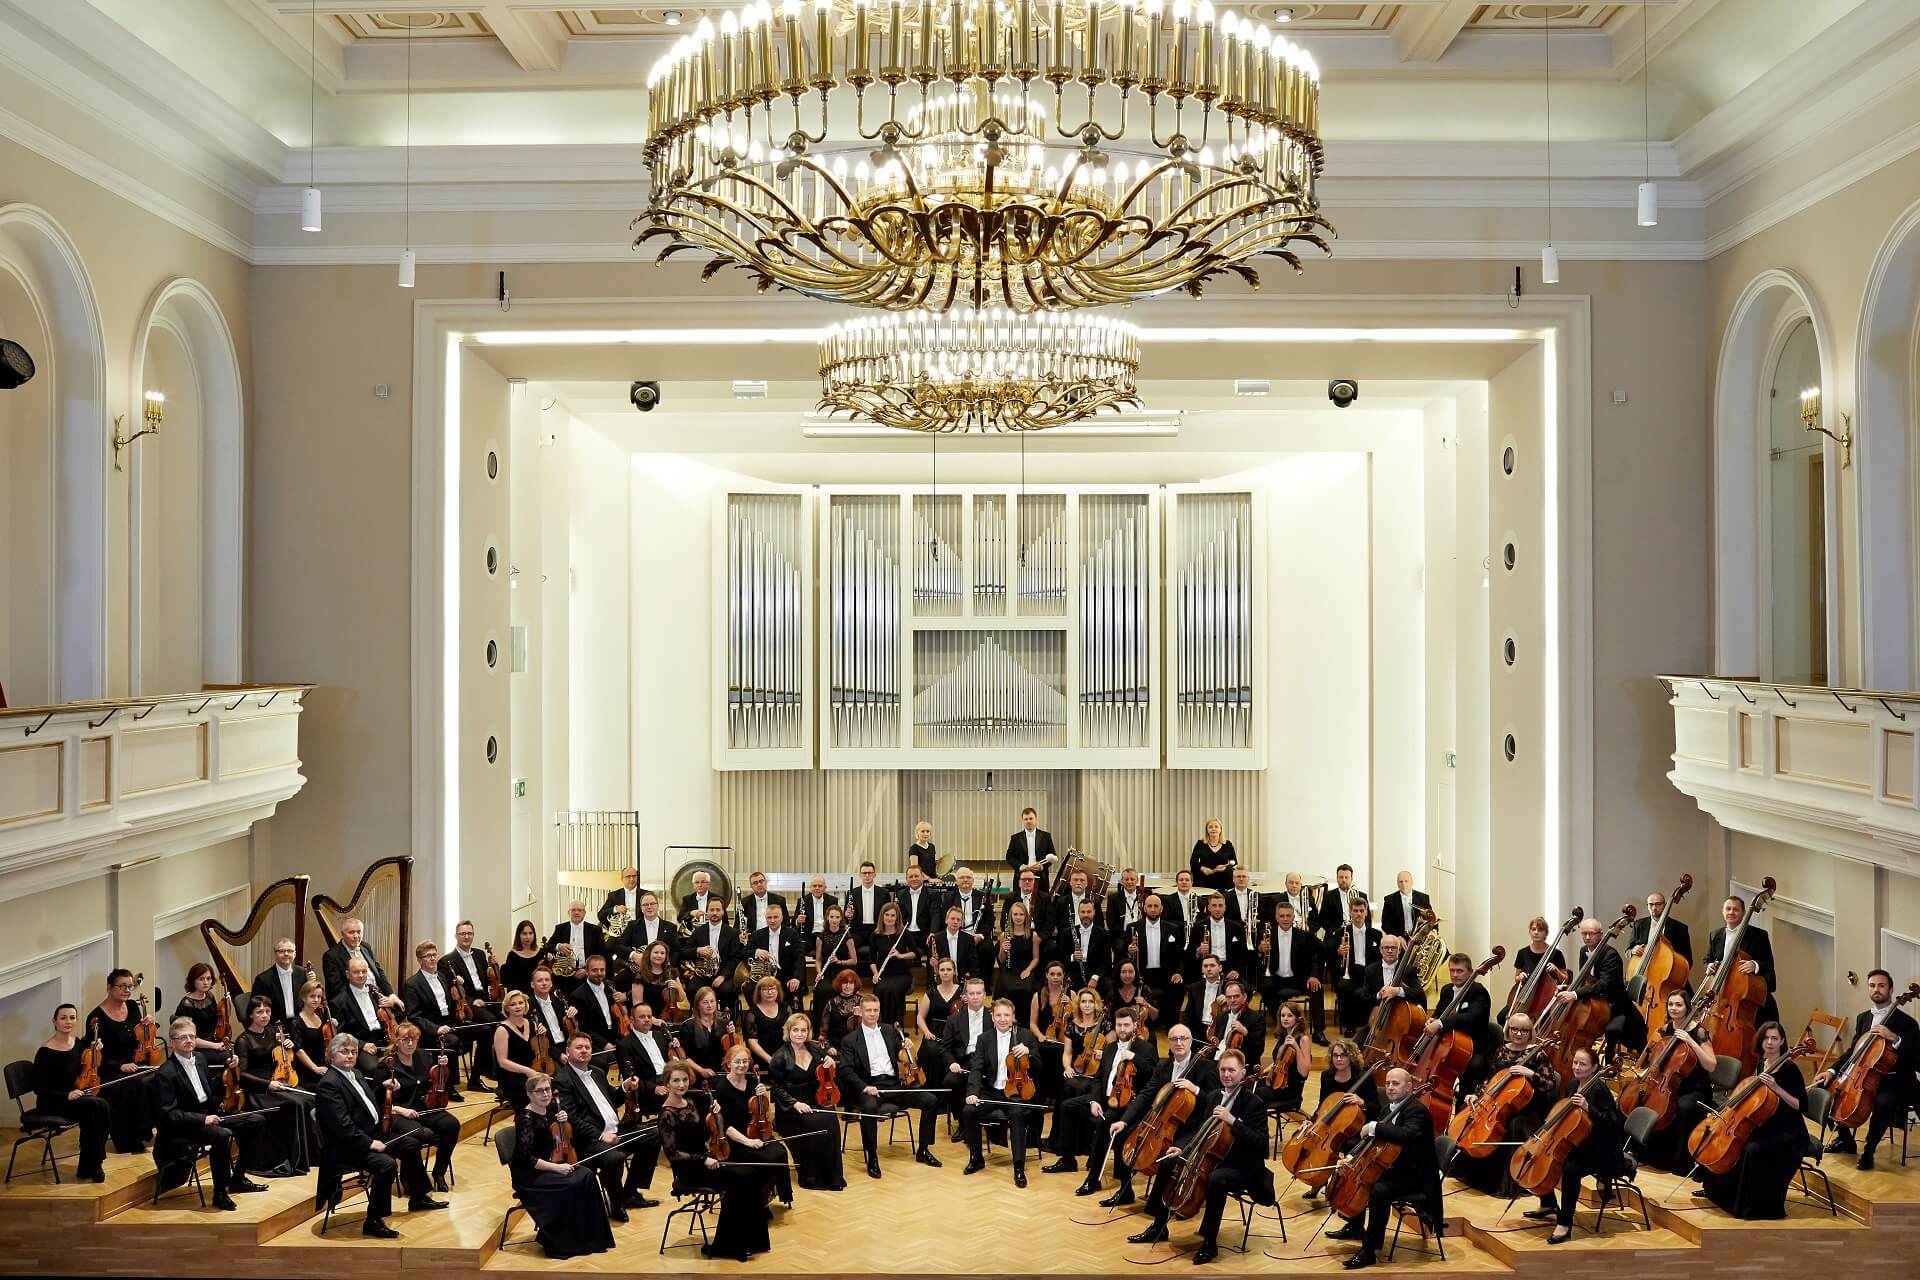 Orkiestra Symfoniczna Filharmonii ól skiej fot Karol Fatyga